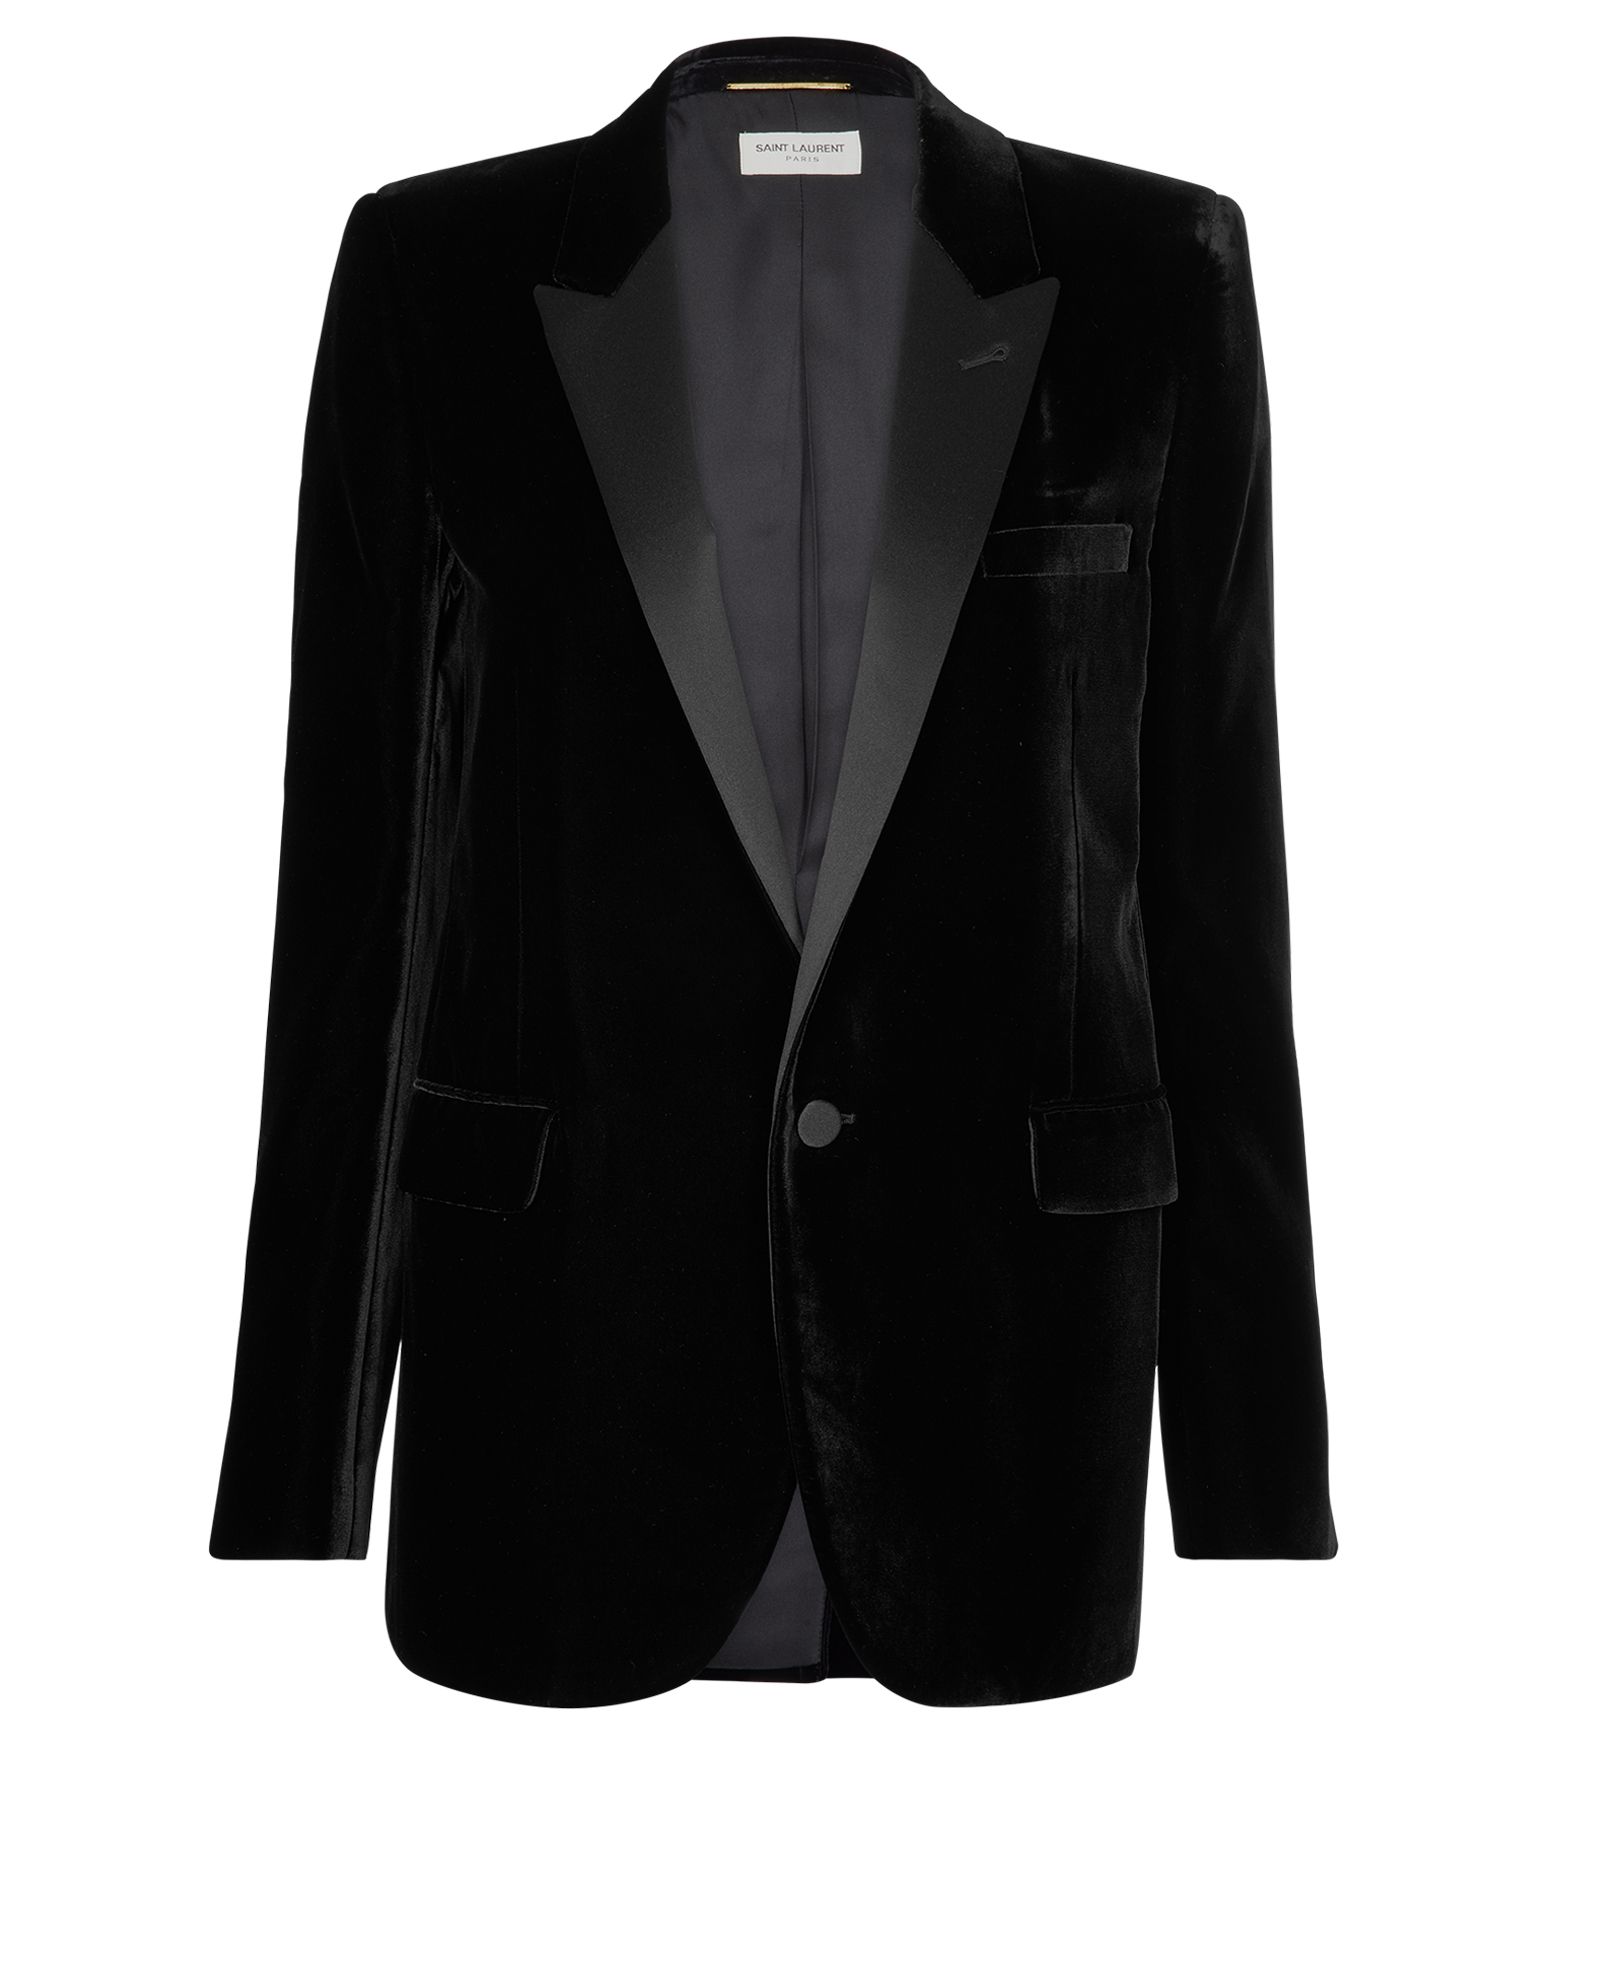 Saint Laurent Velvet Blazer, Jackets - Designer Exchange | Buy Sell ...